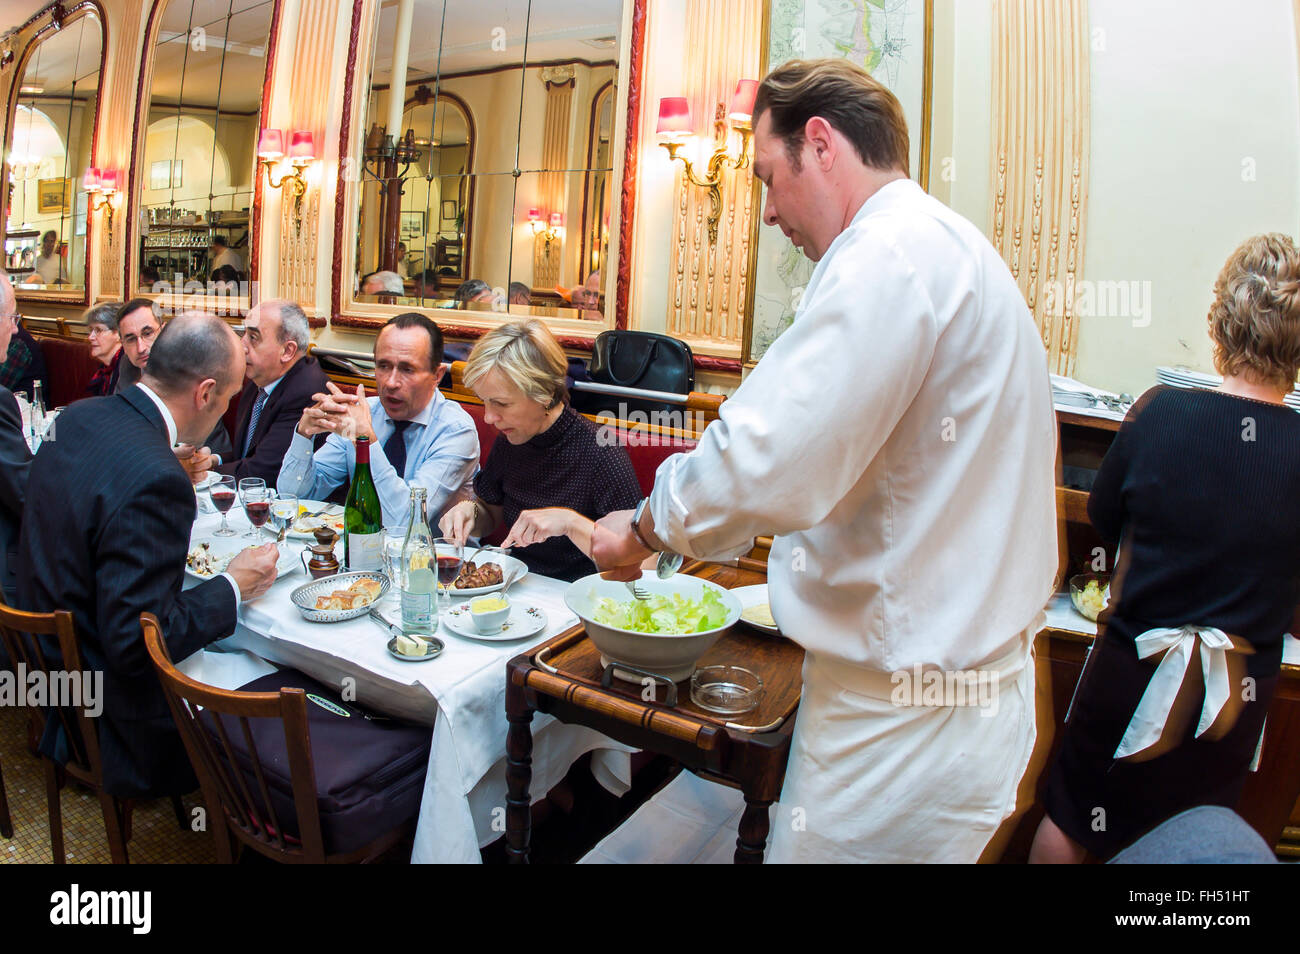 PARIS, France, adultes partageant un repas d'affaires, à l'intérieur du restaurant français. Bistrot parisien classique, tables de service « chez Georges », salle à manger, intérieur, bistrot gastronomique français Banque D'Images